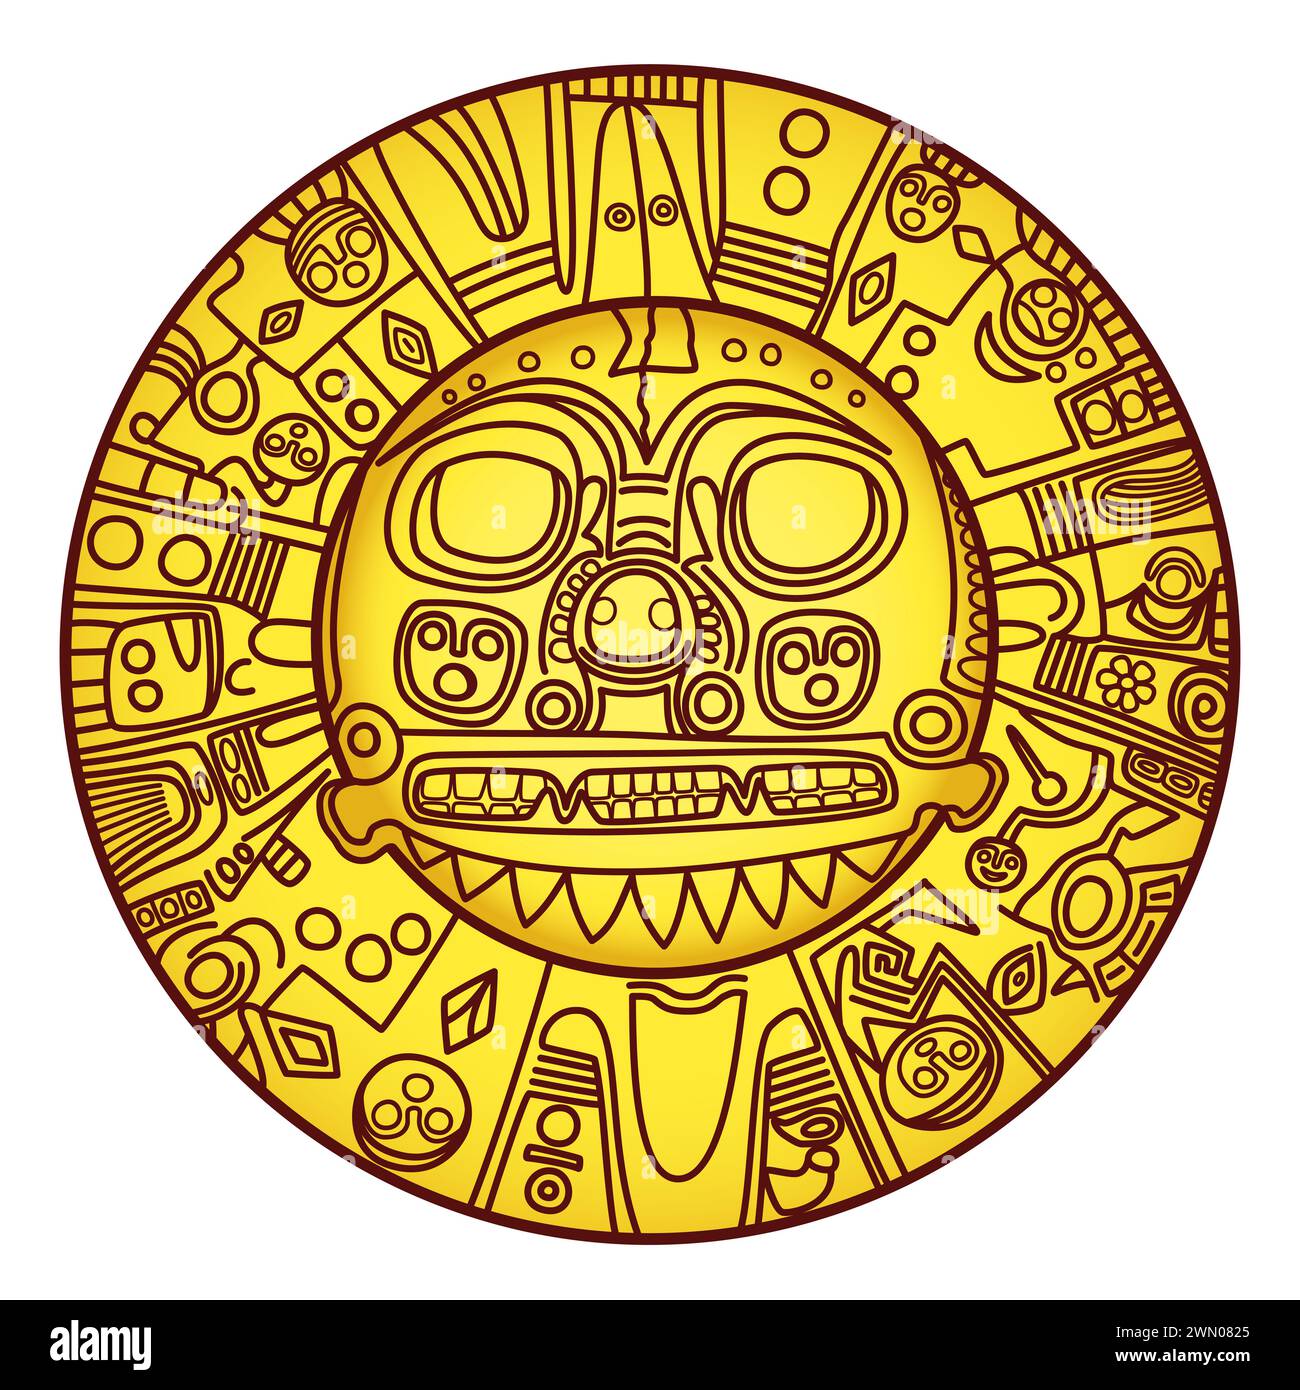 Soleil doré d'Echenique. Plaque d'or préhispanique de signification inconnue, représentant peut-être le Dieu soleil Inti. Porté comme pectoral par les règles Inca. Banque D'Images